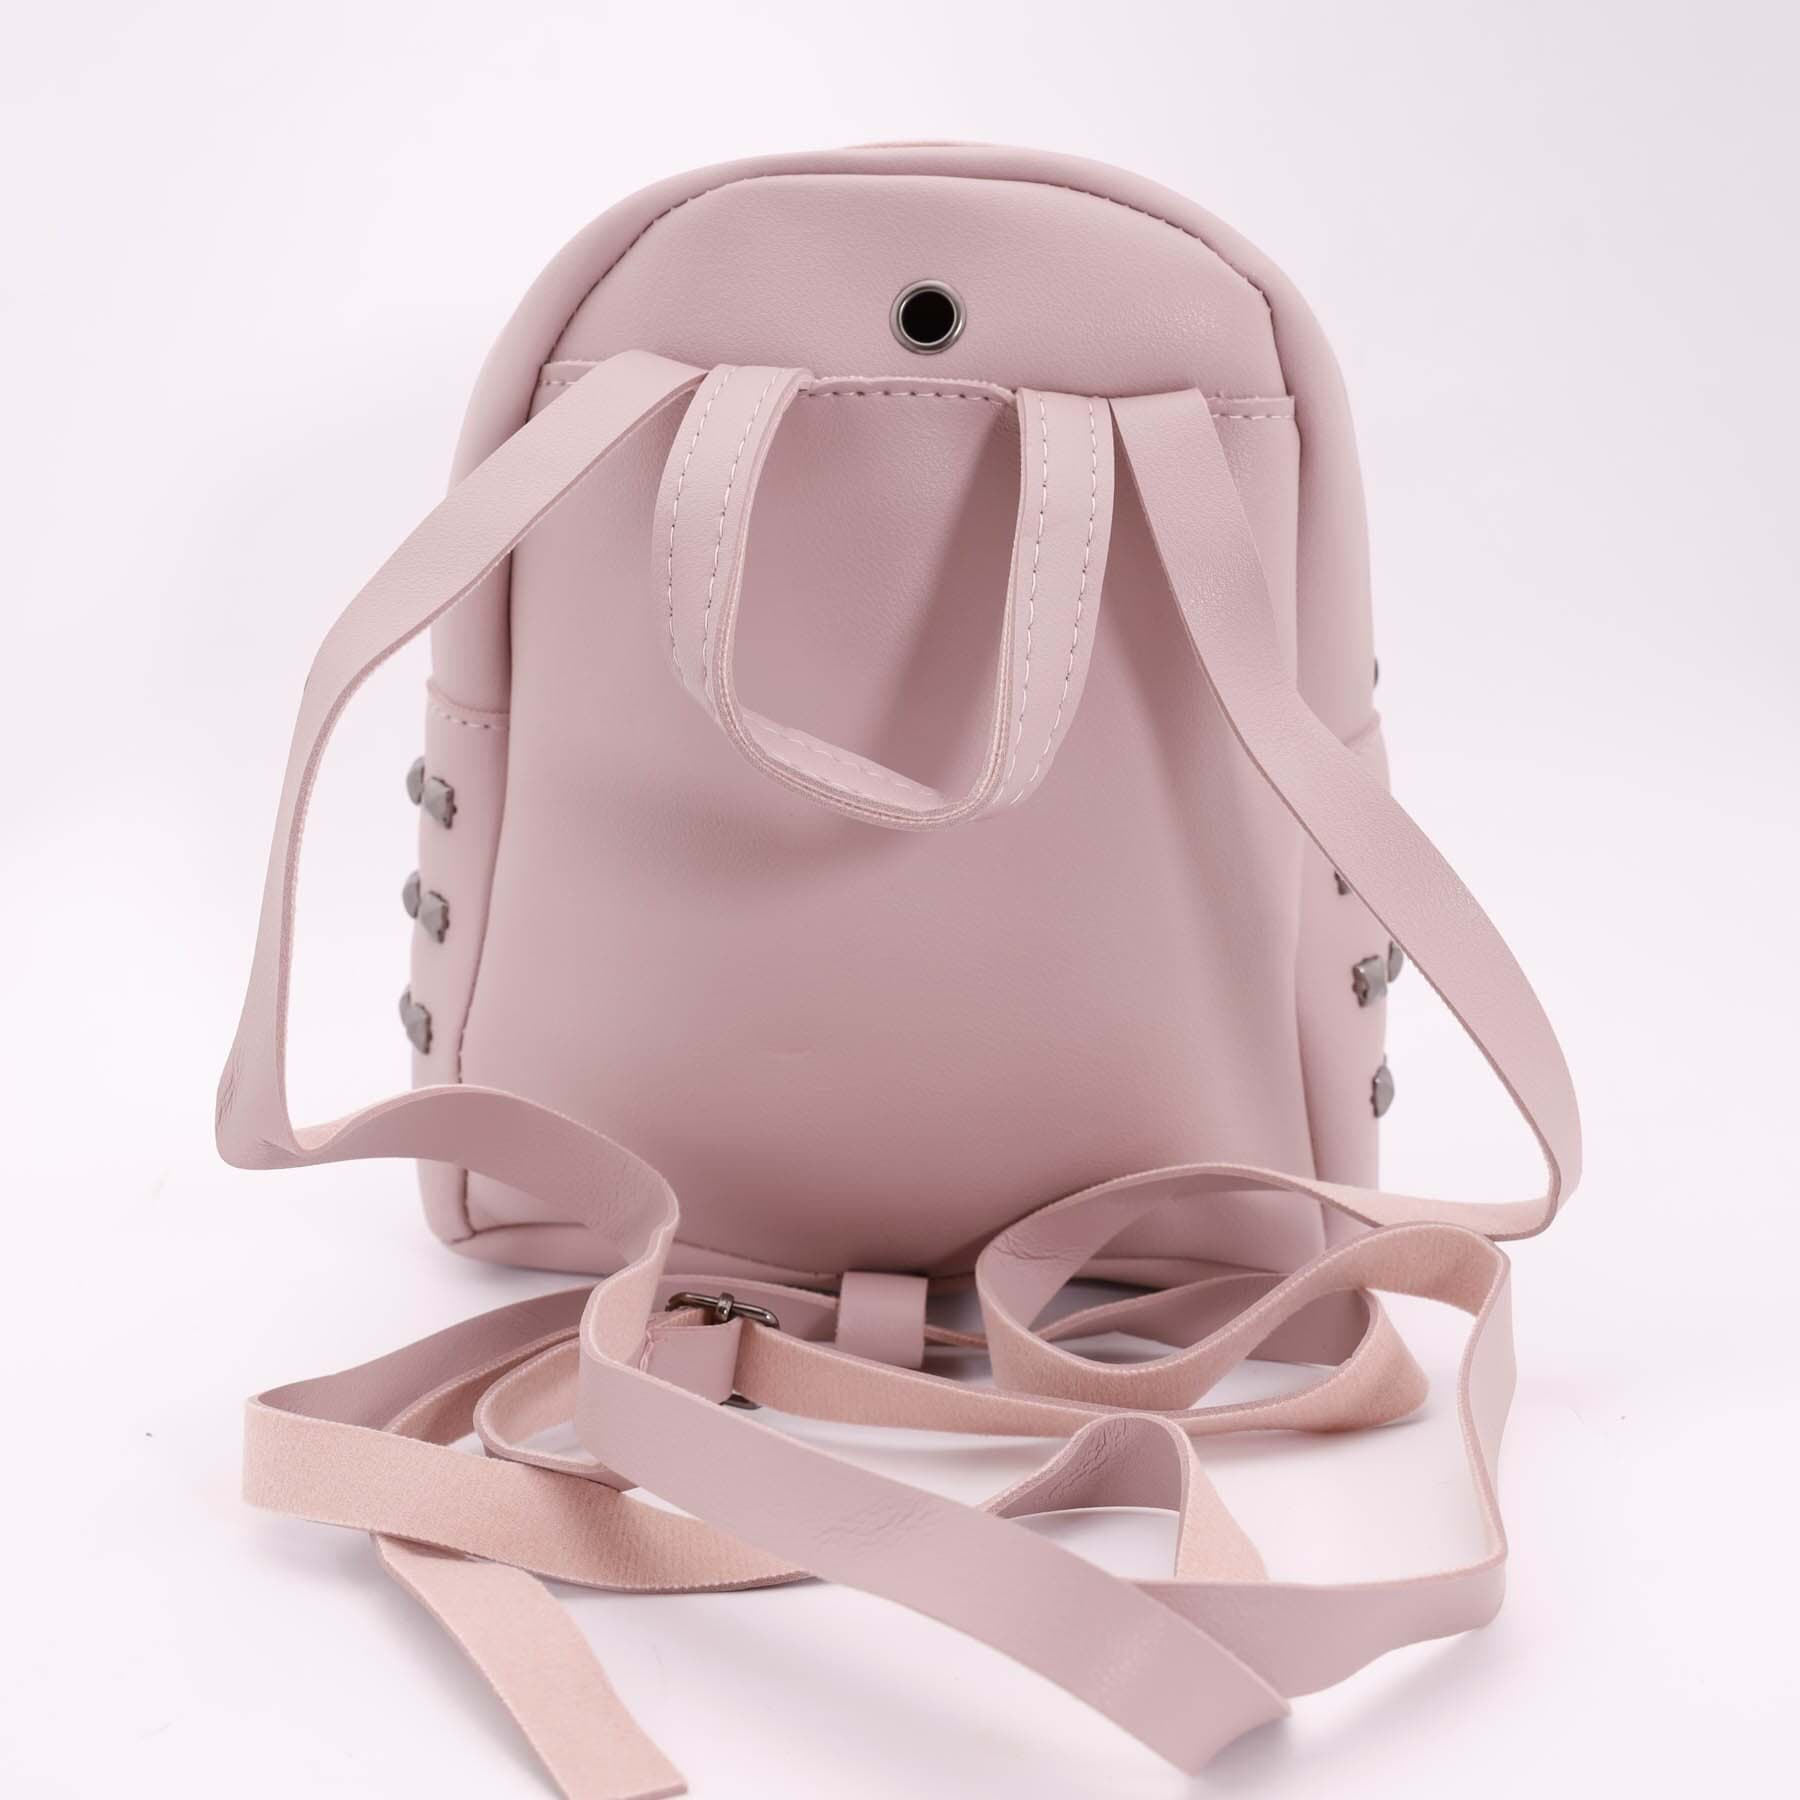 Рюкзак женский SKY эко-кожа, цвет: желтый, розовый, 1 шт